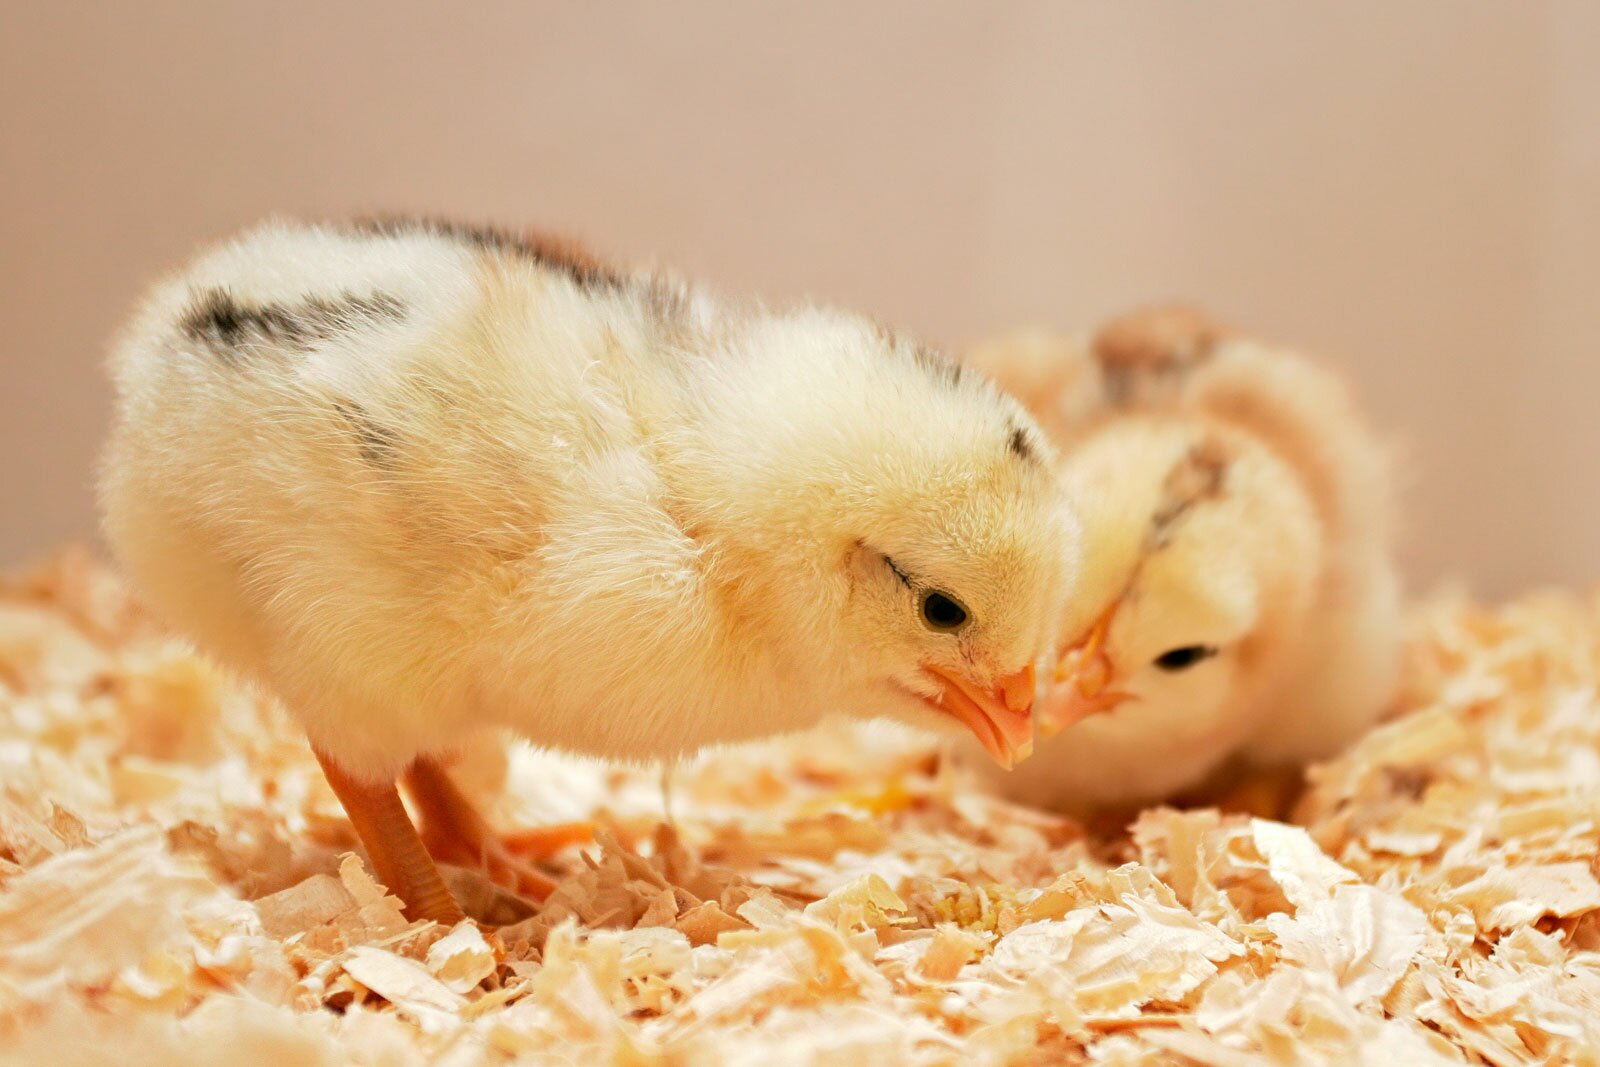 Установлено наличие антител к возбудителю инфекционного бронхита кур в образцах сыворотки крови цыплят